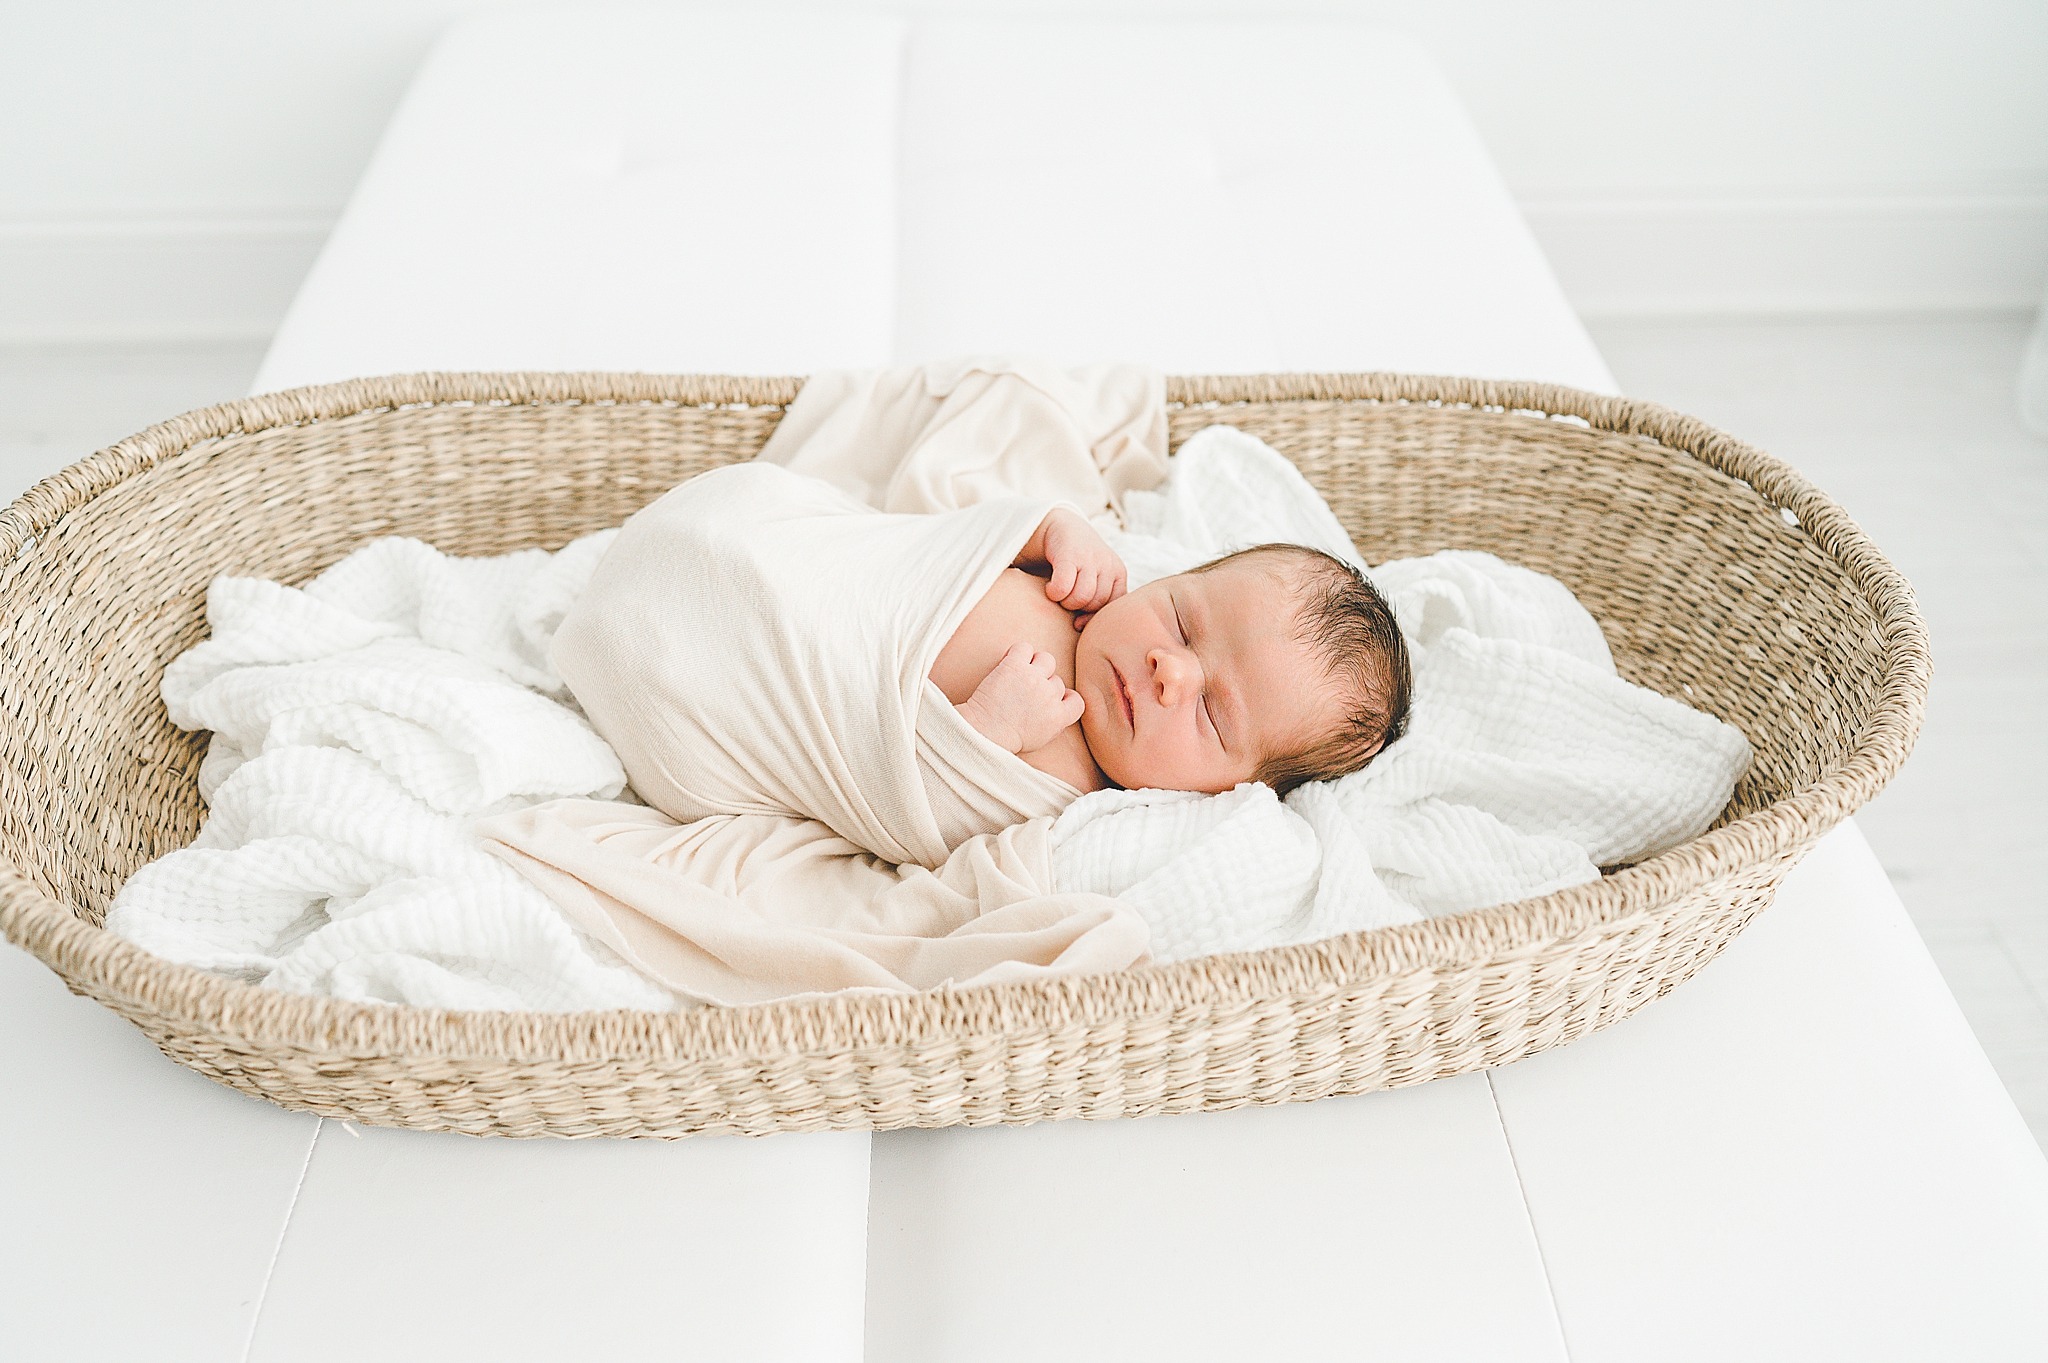 Cincinnati Ohio studio newborn photographer | baby boy